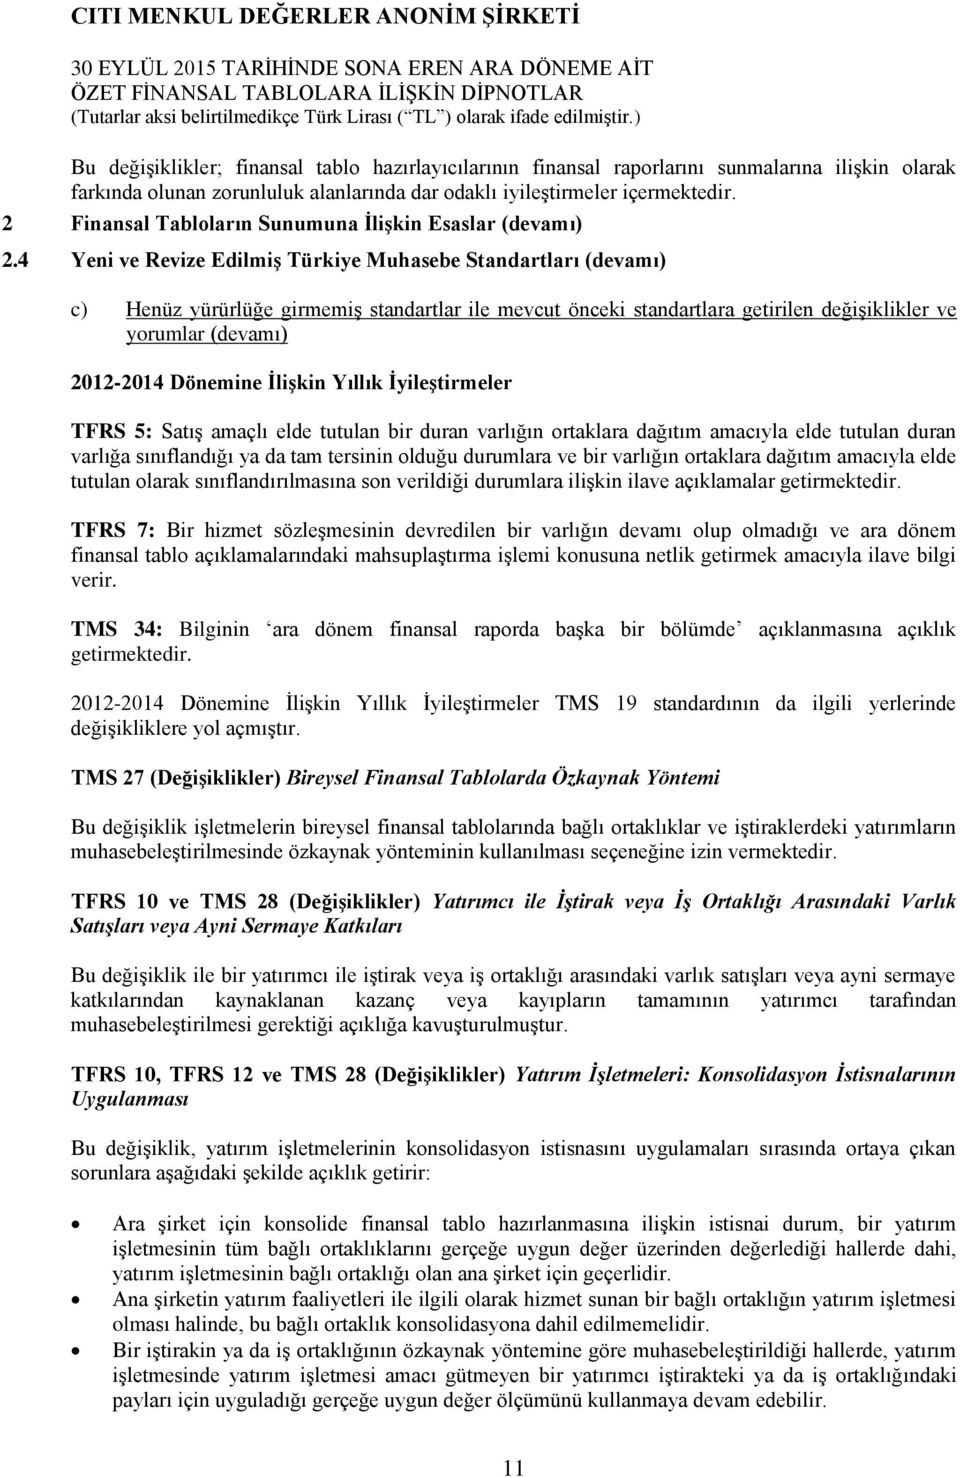 4 Yeni ve Revize Edilmiş Türkiye Muhasebe Standartları (devamı) c) Henüz yürürlüğe girmemiş standartlar ile mevcut önceki standartlara getirilen değişiklikler ve yorumlar (devamı) 2012-2014 Dönemine